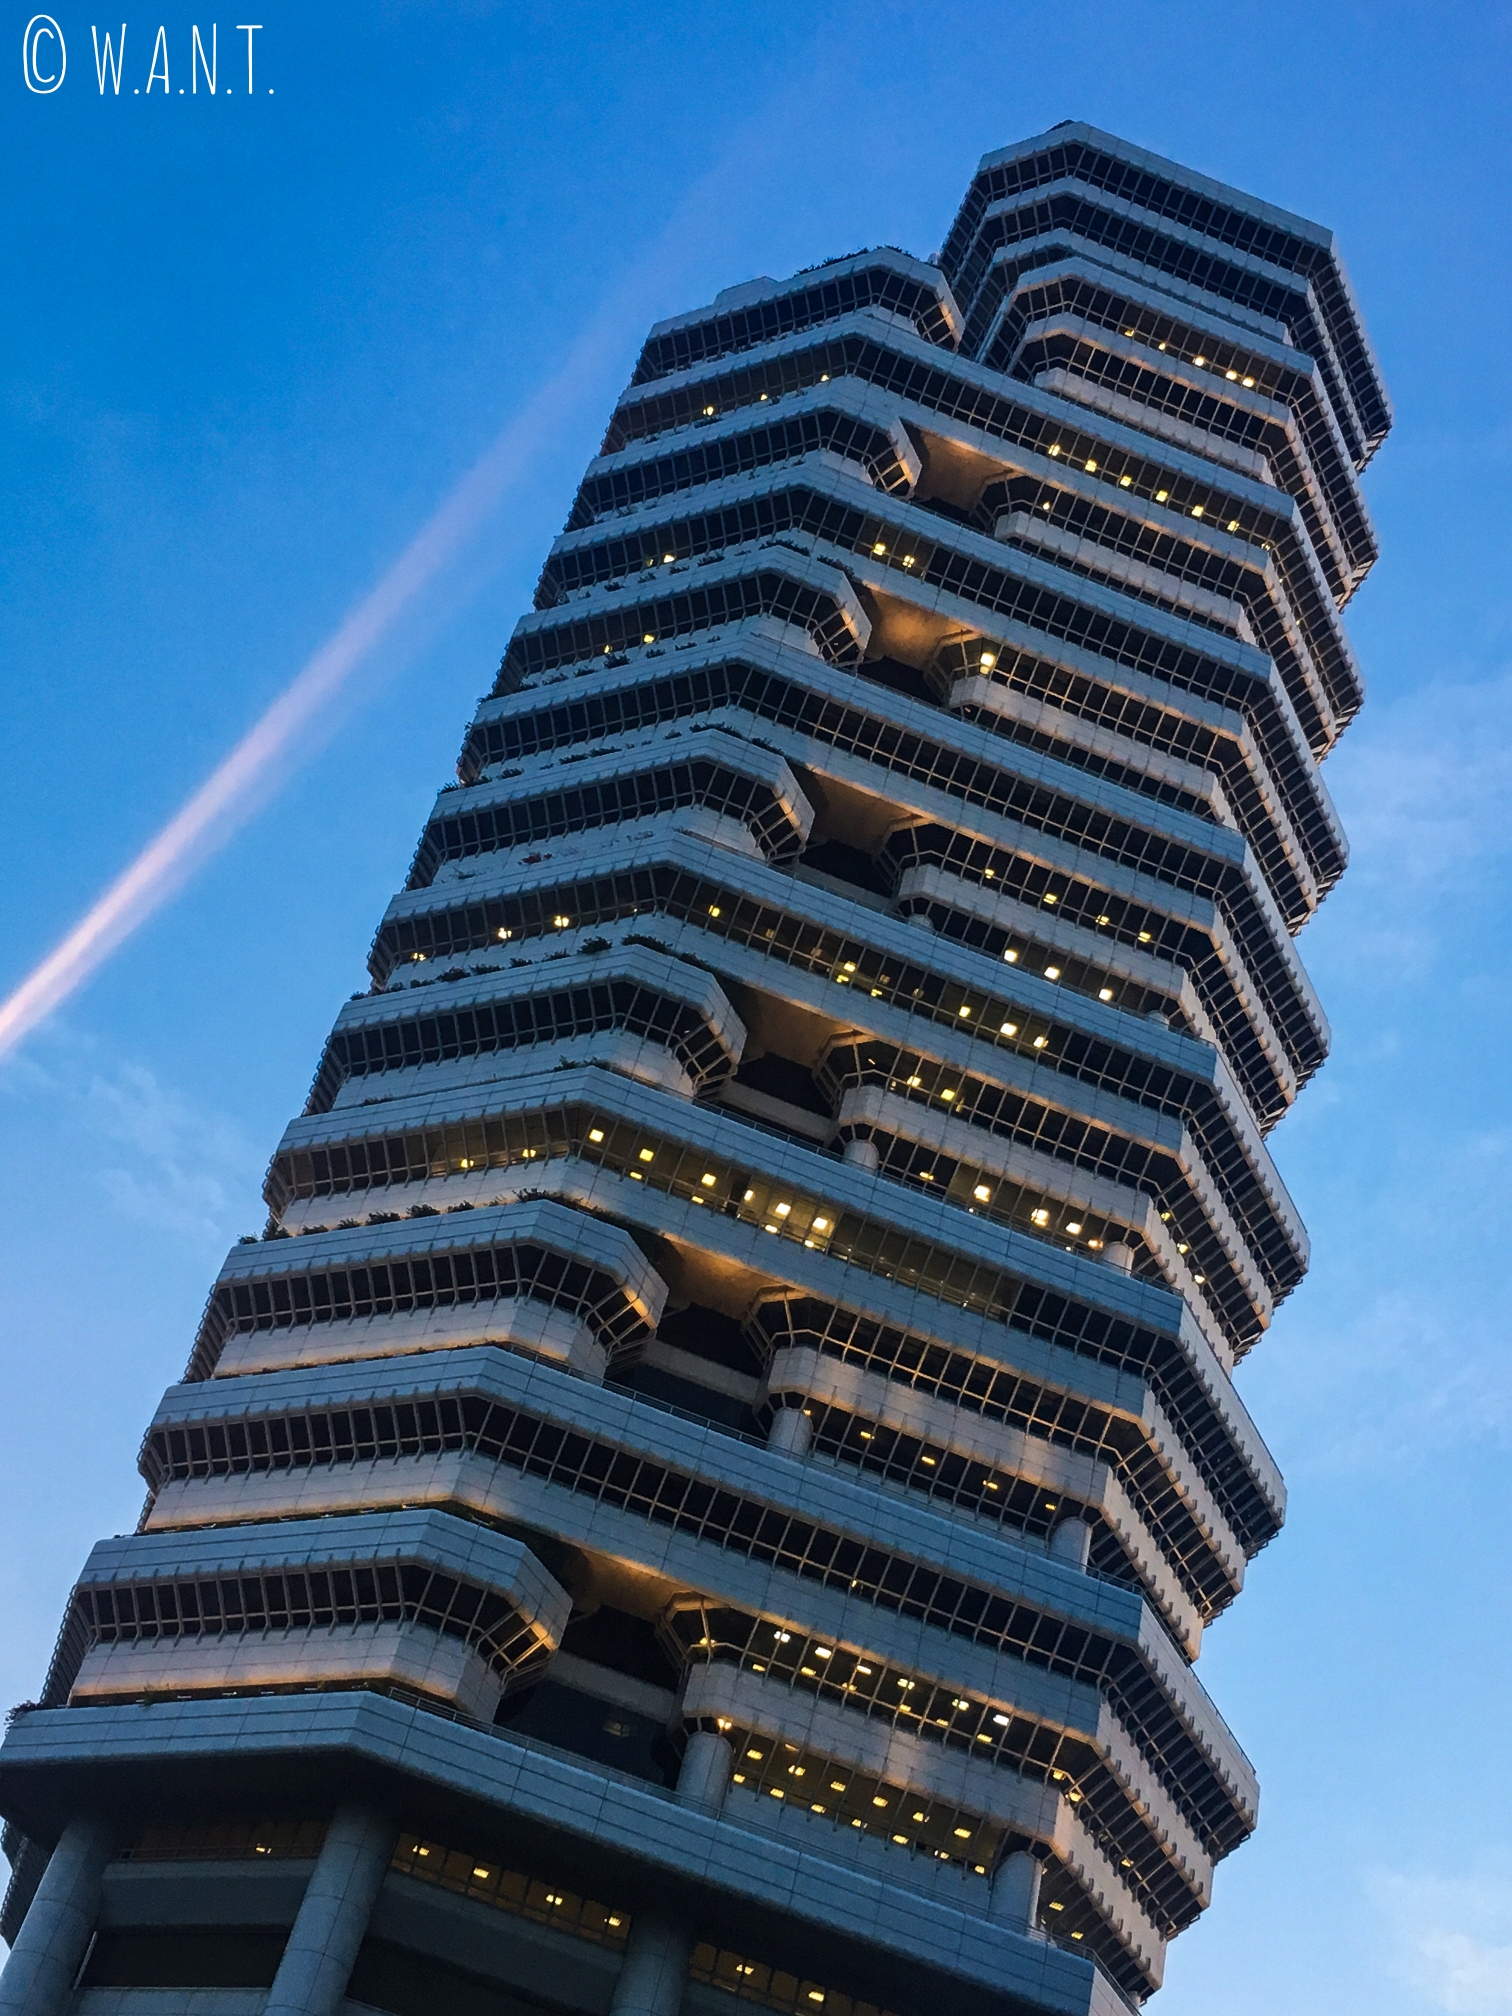 Le design des tours de Singapour s'avère parfois audacieux